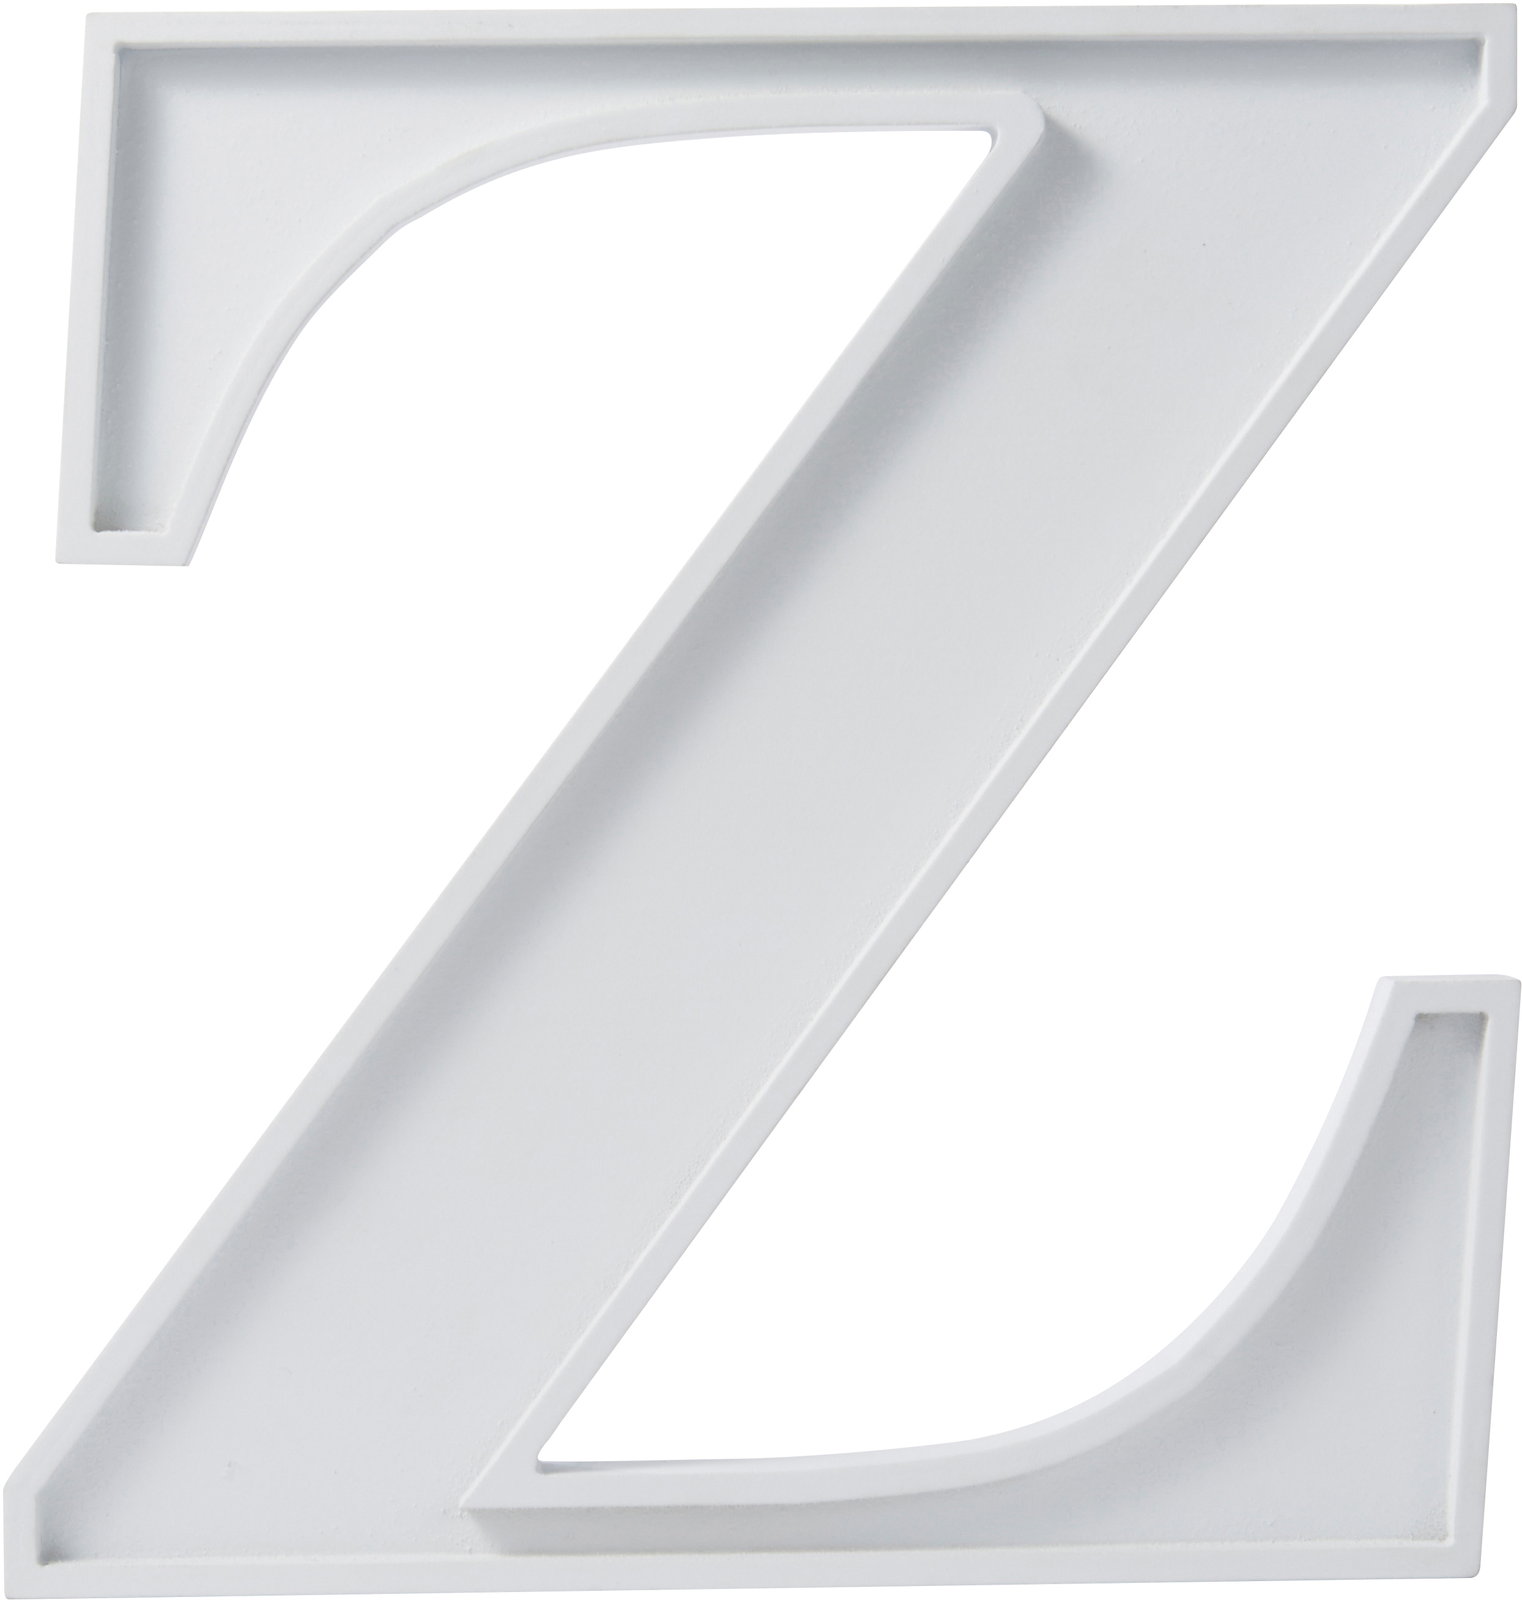 ｱﾙﾌｧﾍﾞｯﾄﾍﾞｰｽ Z: デコレーションアイテム ｜ YDMオンラインストア